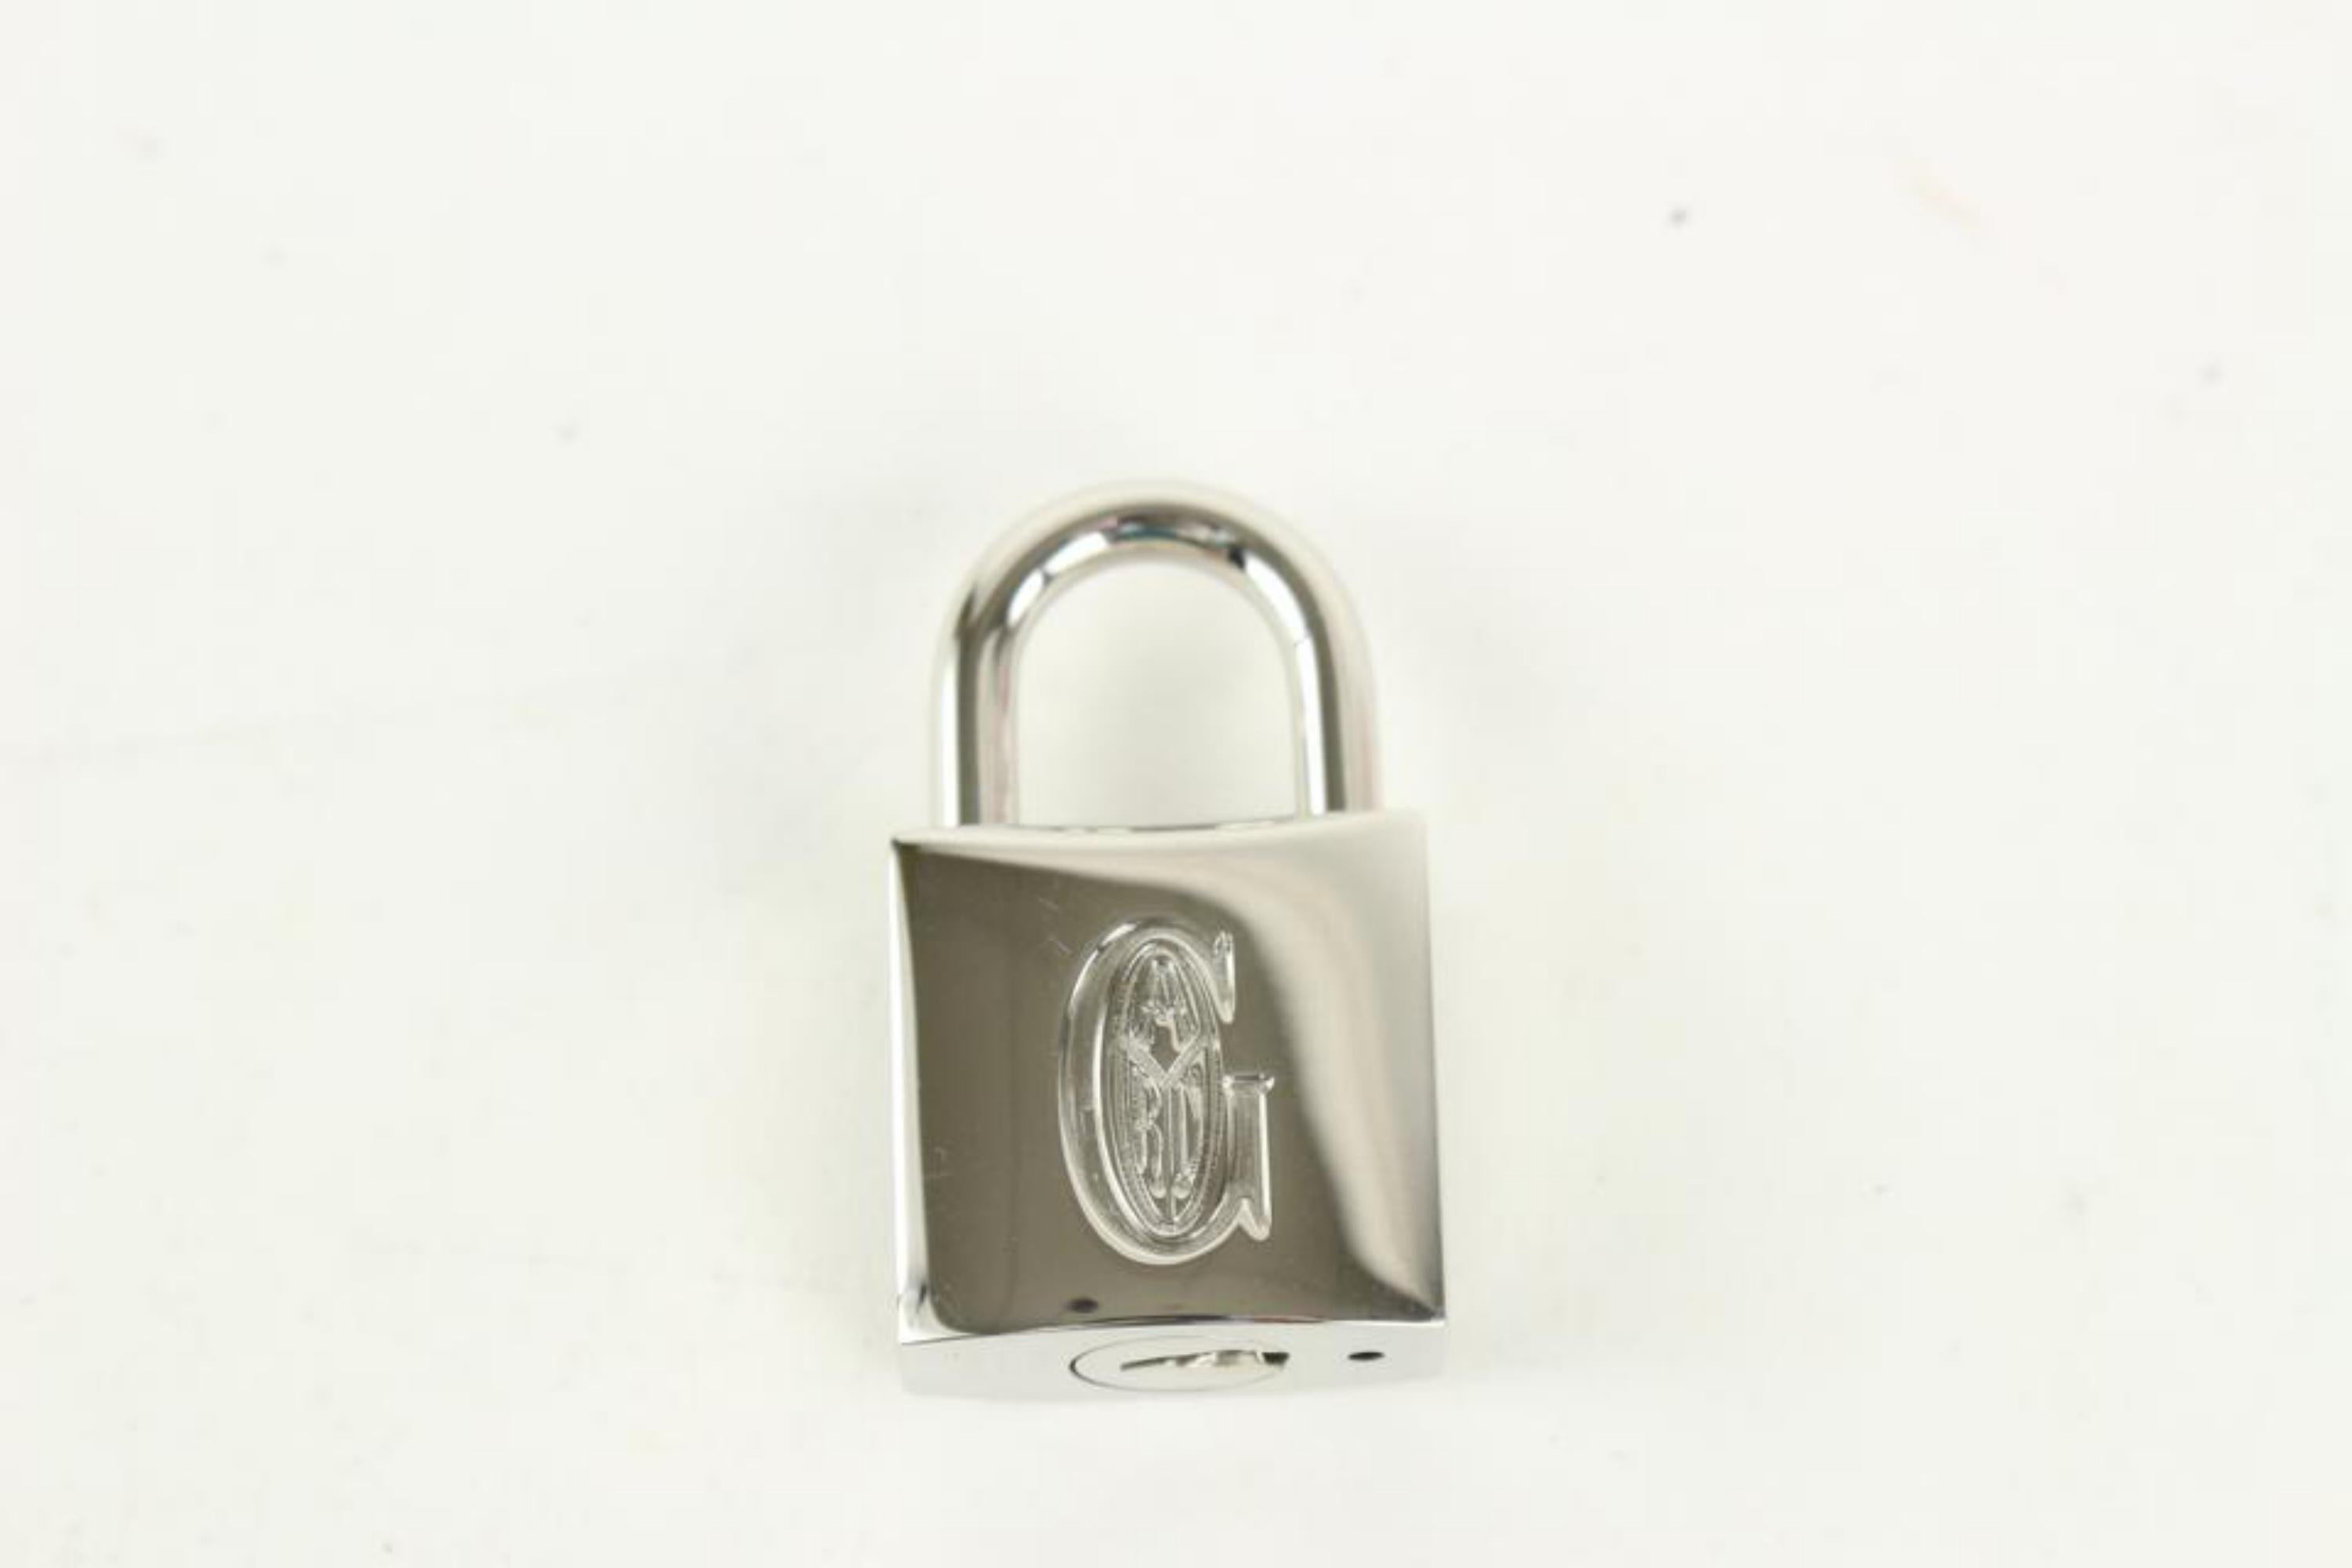 Beige Goyard Silver Lock and Key Set Cadena Bag Charm 1012gy30